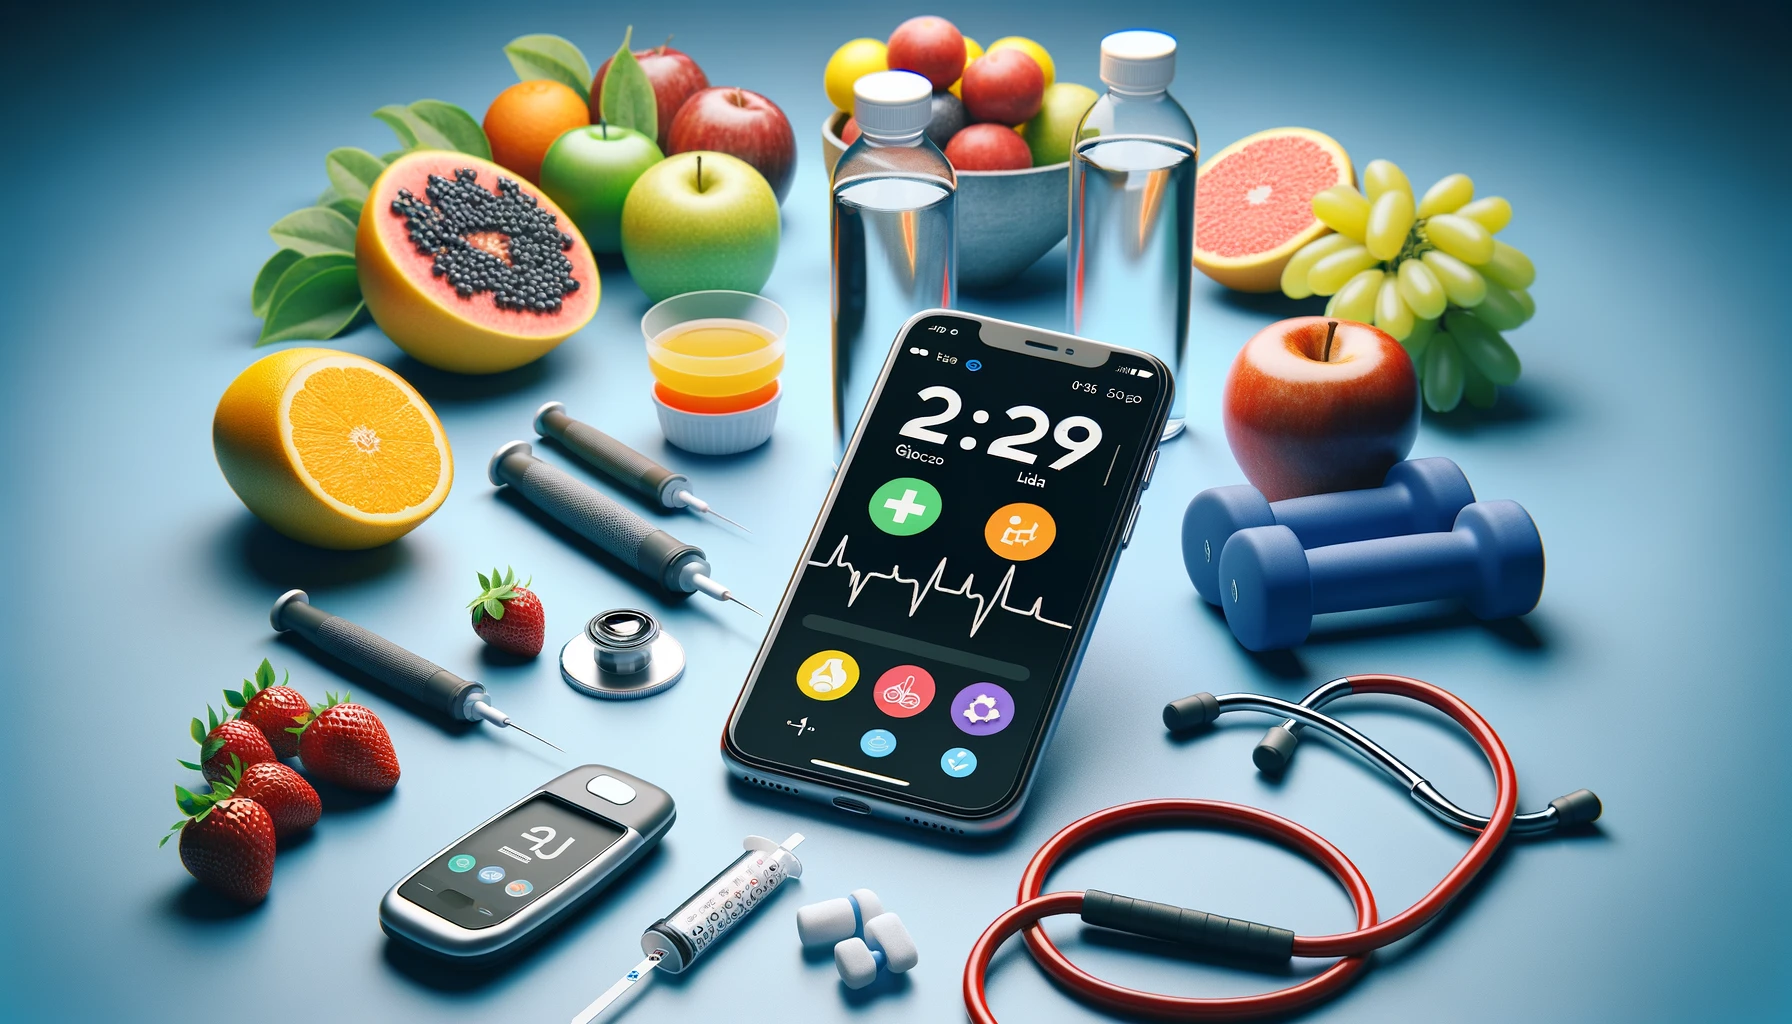 telefono inteligente mostrando una aplicacion de monitoreo de glucosa en sangre en su pantalla rodeado de frutas y verduras